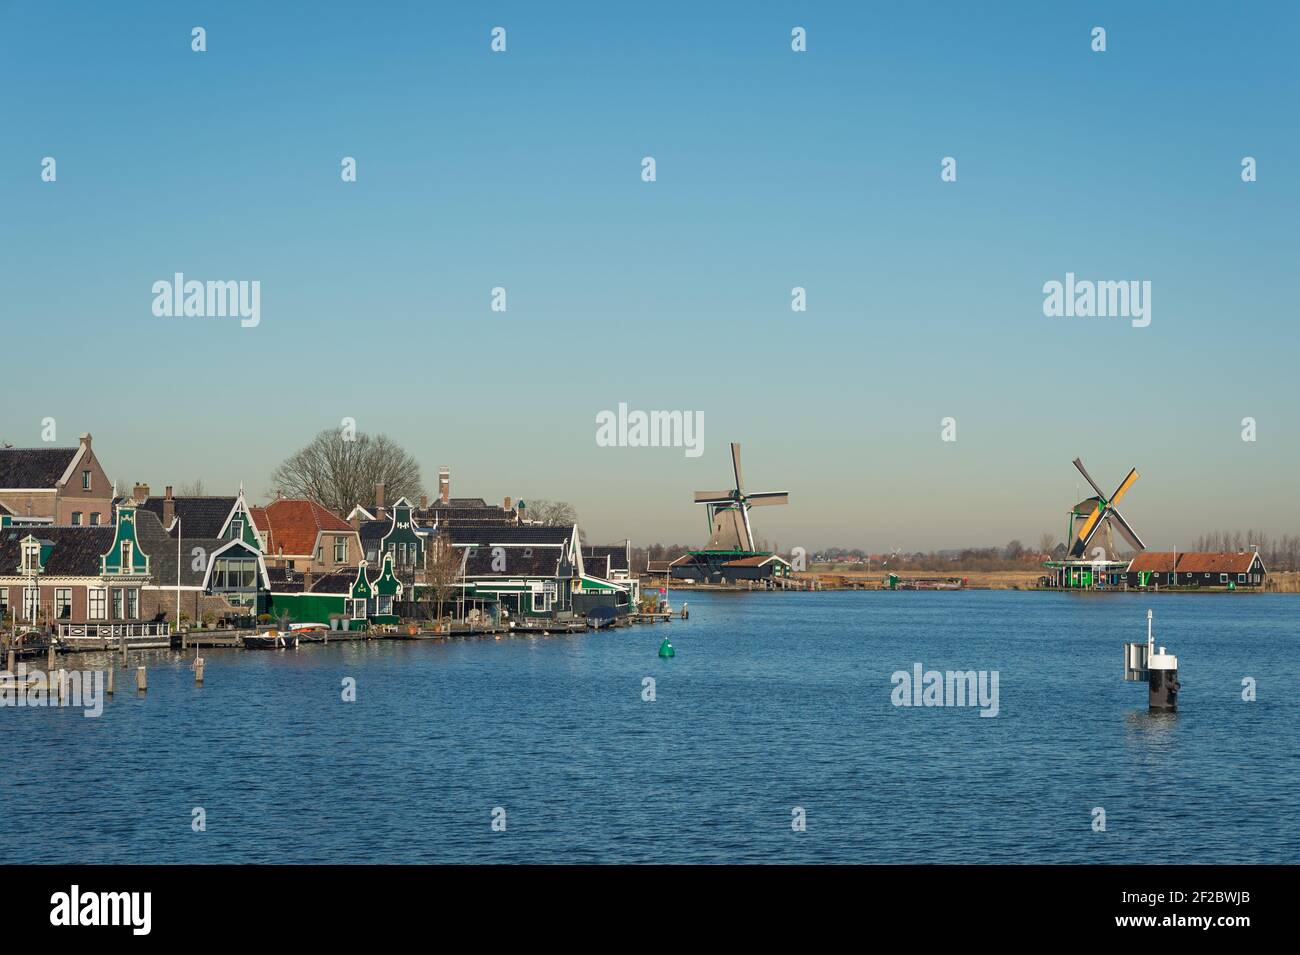 Historic windmills in Zaanse Schans on the banks of the Zaan river, Zaandijk, Netherlands. Stock Photo